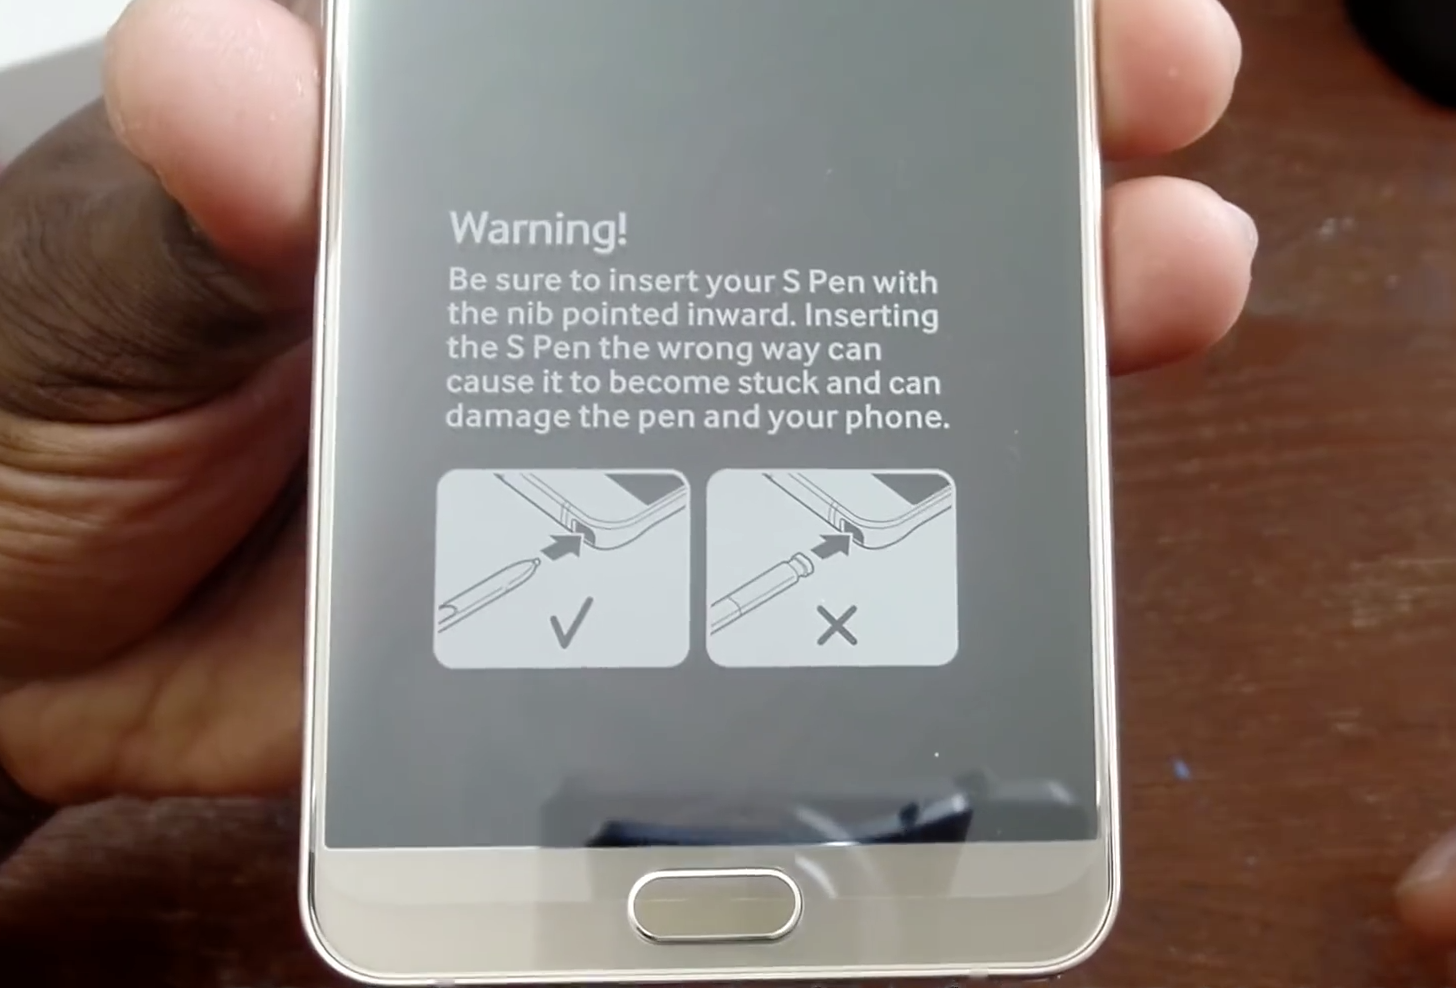 กันเหนียว! Samsung แปะฉลากบนหน้าจอ Galaxy Note 5 บอกวิธีเสียบ S Pen ที่ถูกต้อง